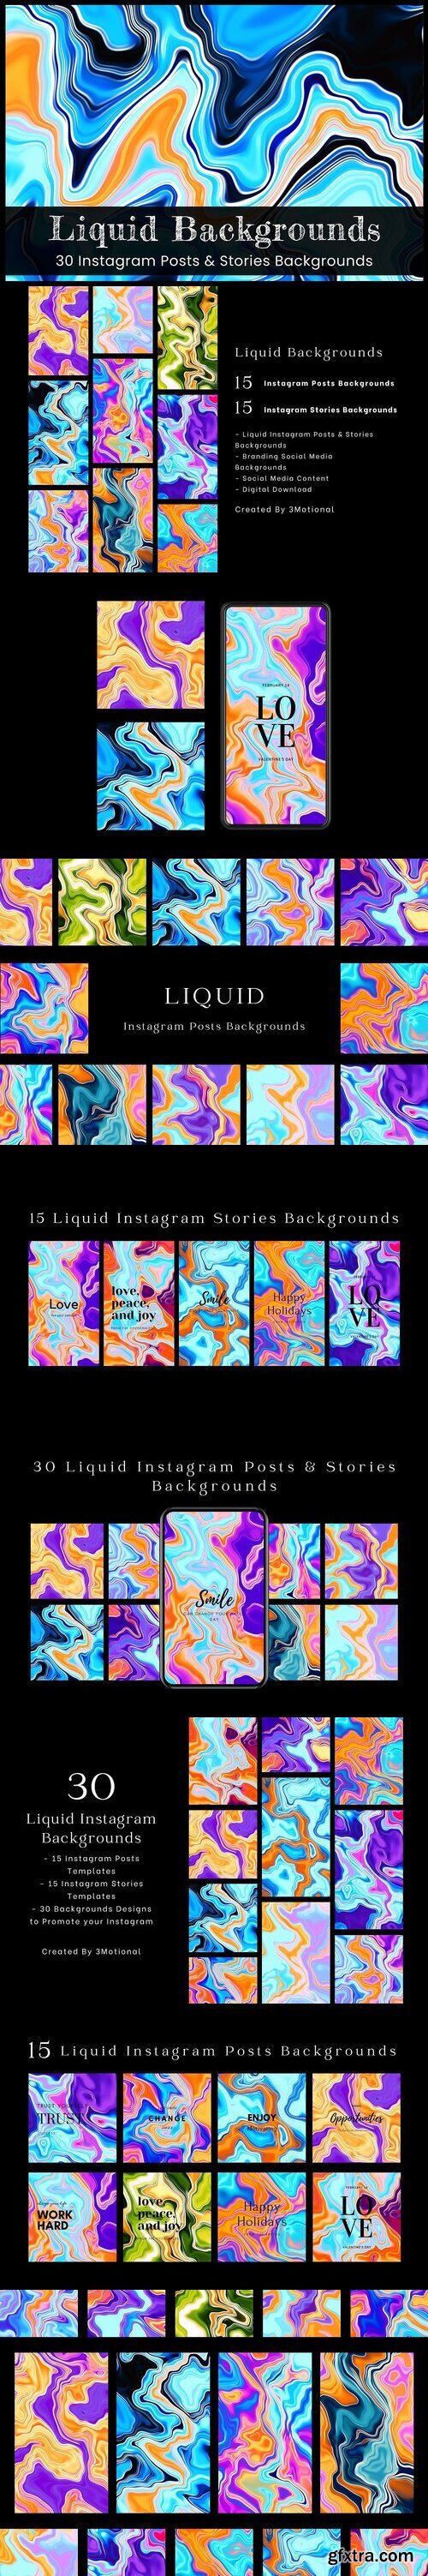 CreativeMarket - Liquid Instagram Backgrounds 7541818